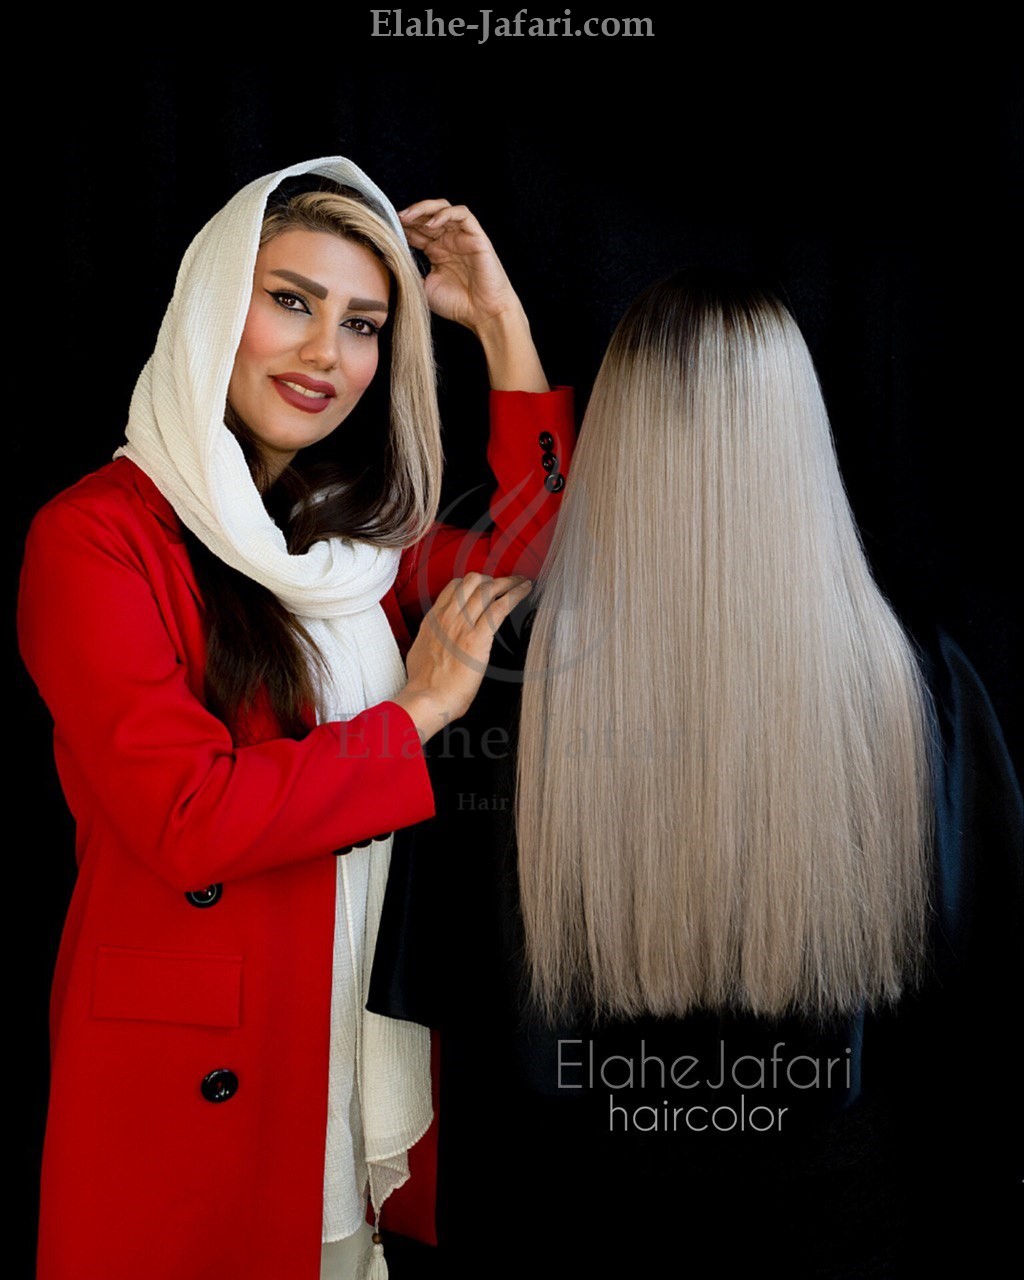 دوره آموزش تخصصی رنگ مو در اصفهان - الهه جعفری